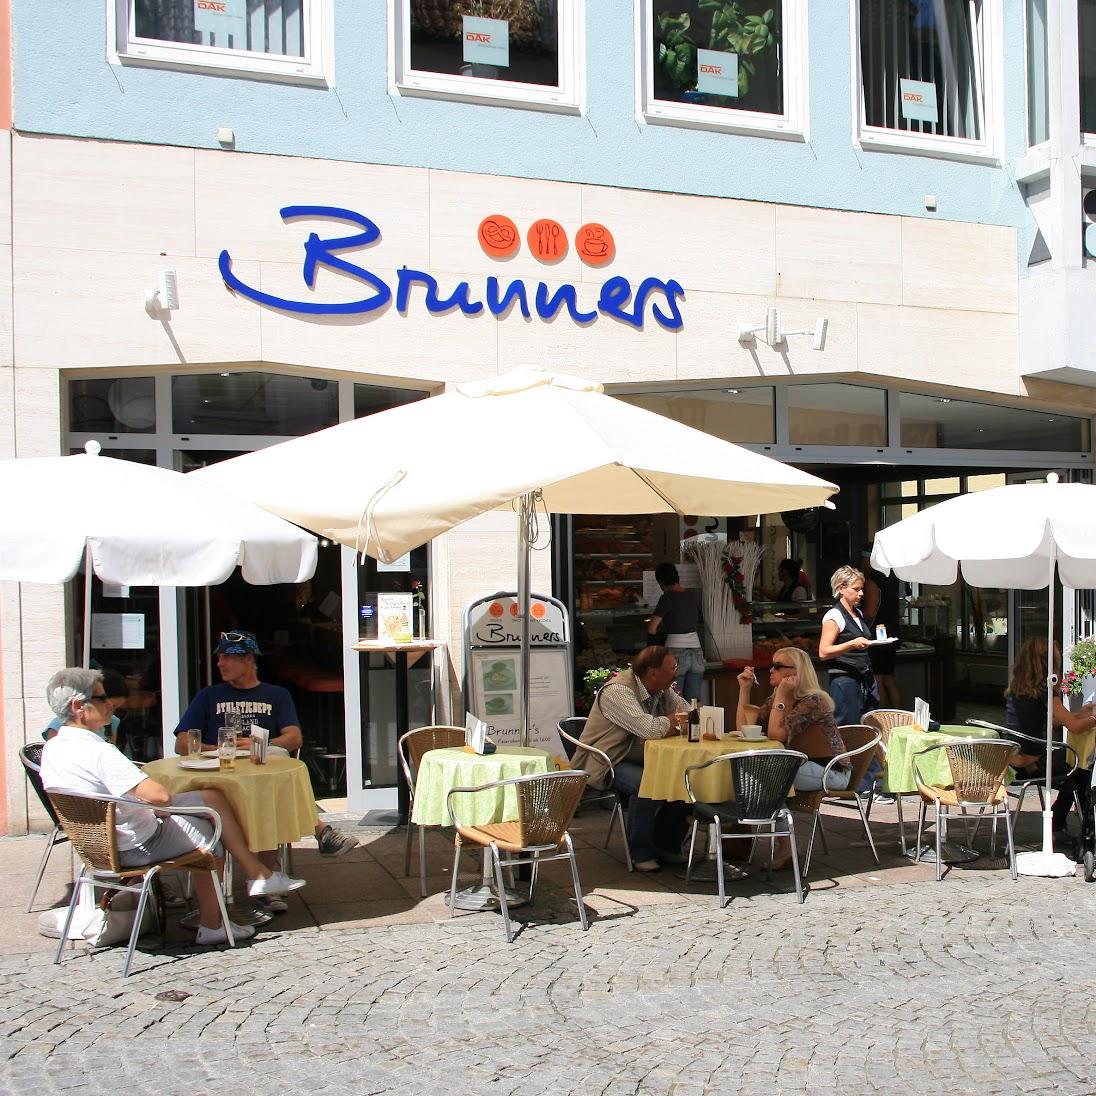 Restaurant "Bäckerei Brunners" in Füssen